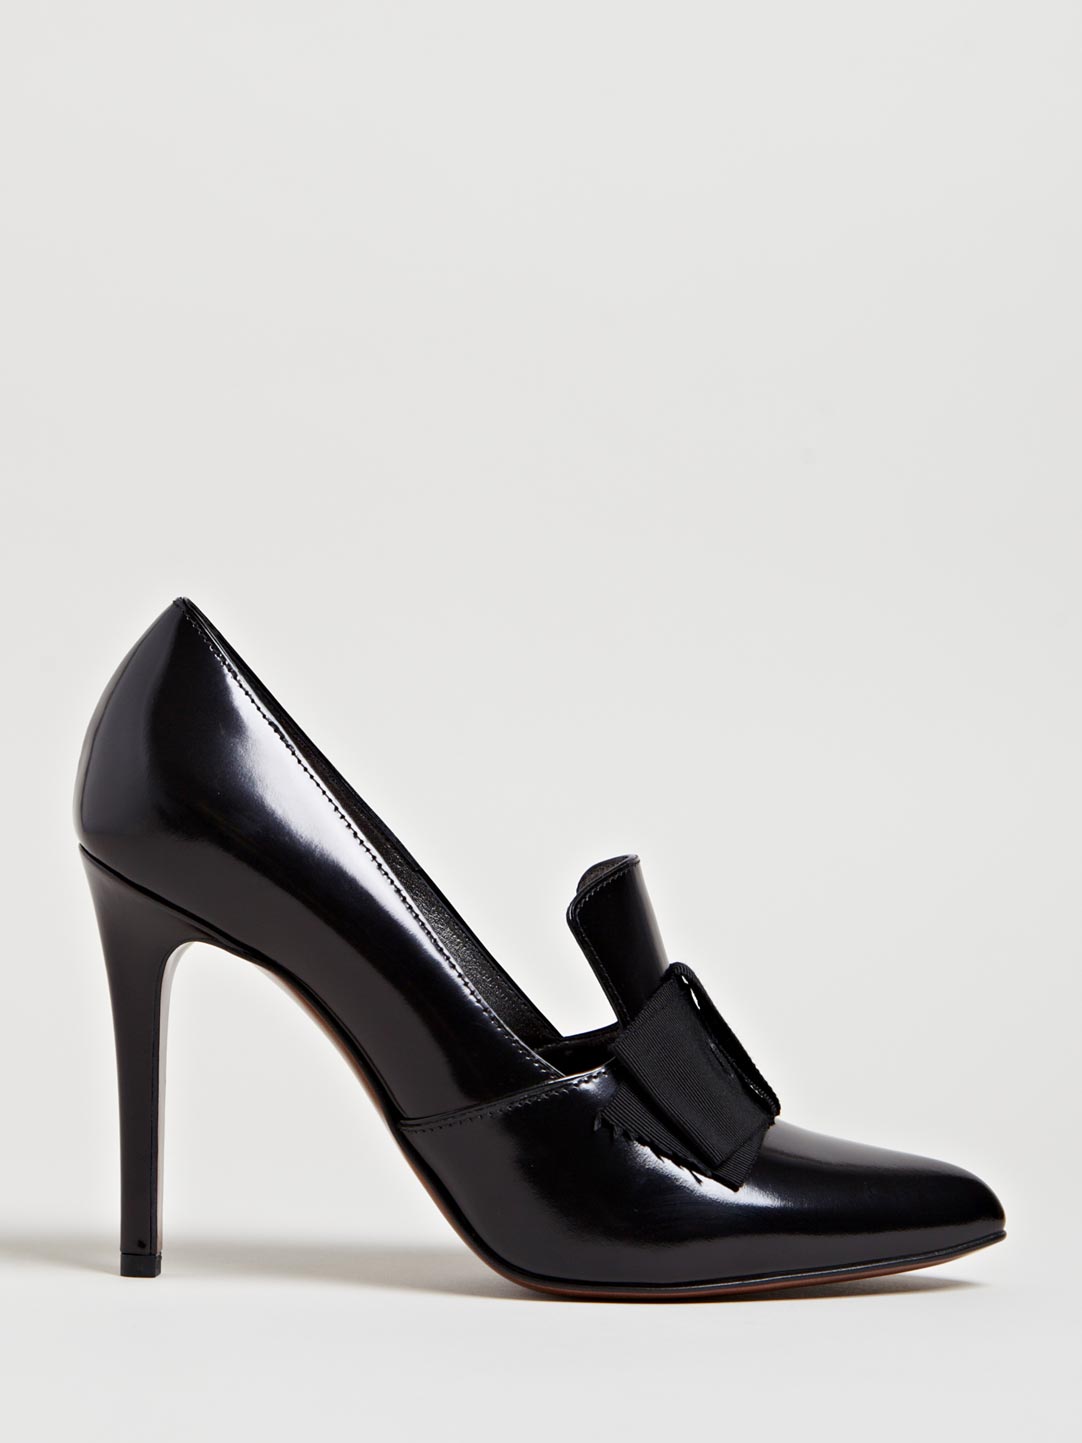 Lyst - Lanvin Womens Loafer Heels in Black